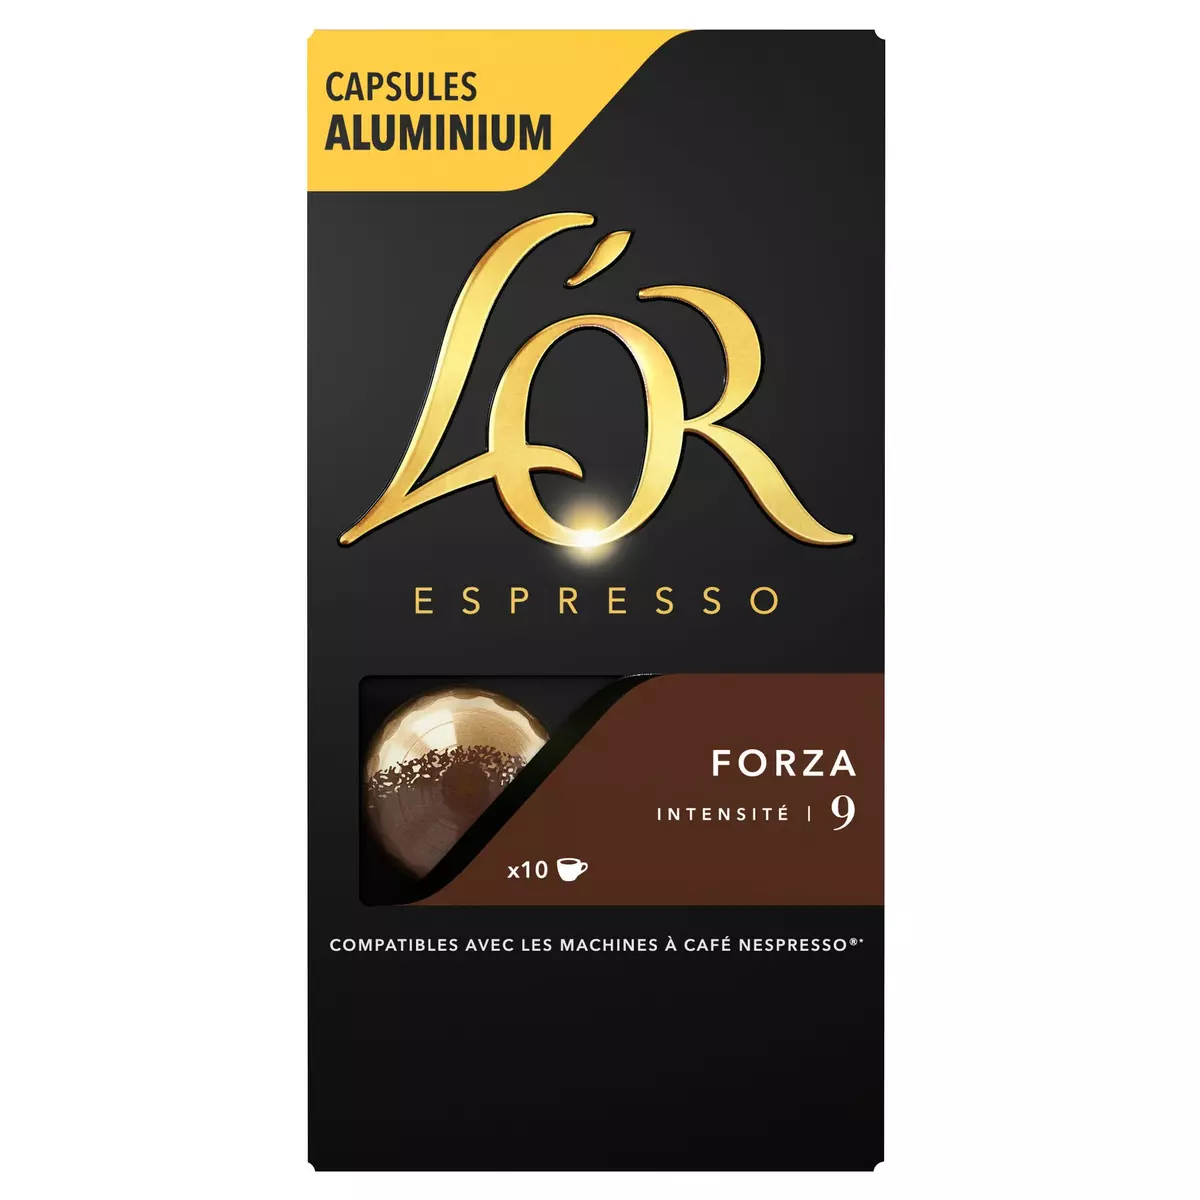 L'OR ESPRESSO Capsules de café forza intensité 9 compatibles Nespresso 10 capsules 52g